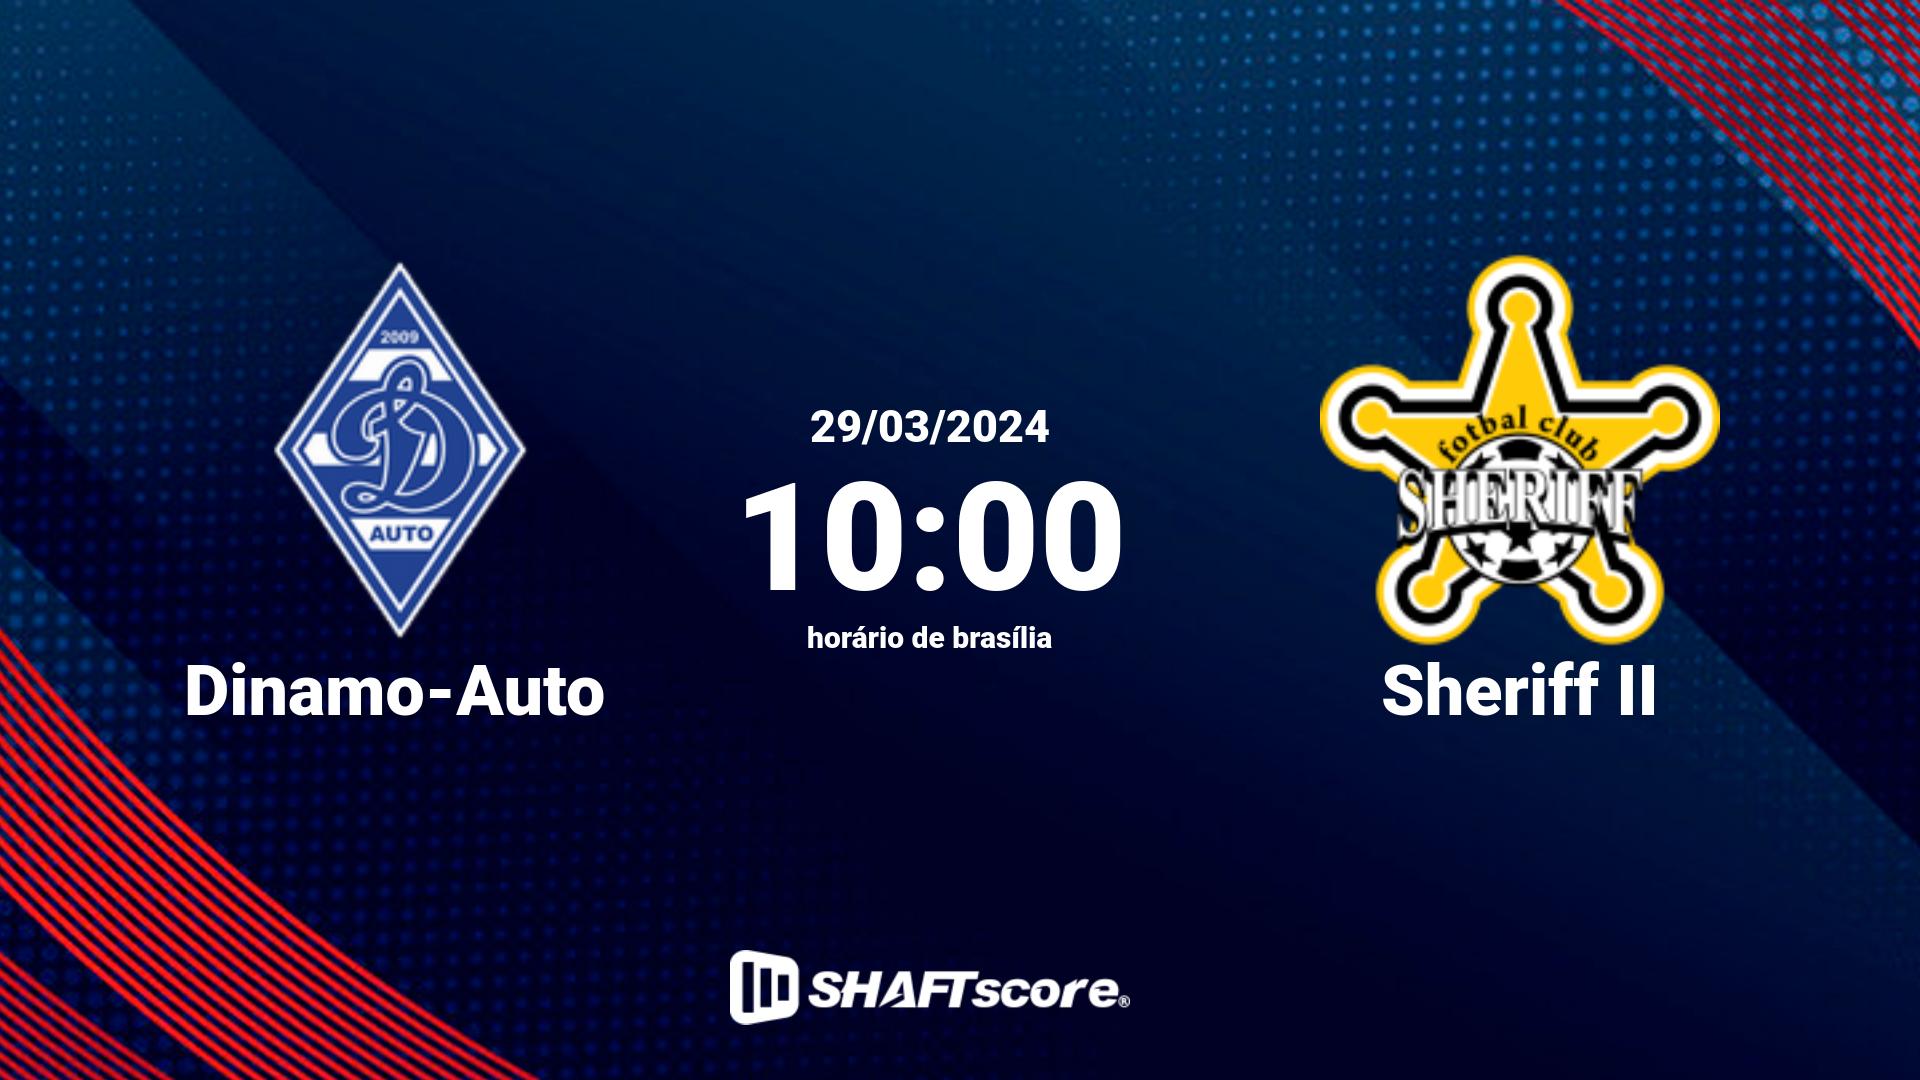 Estatísticas do jogo Dinamo-Auto vs Sheriff II 29.03 10:00